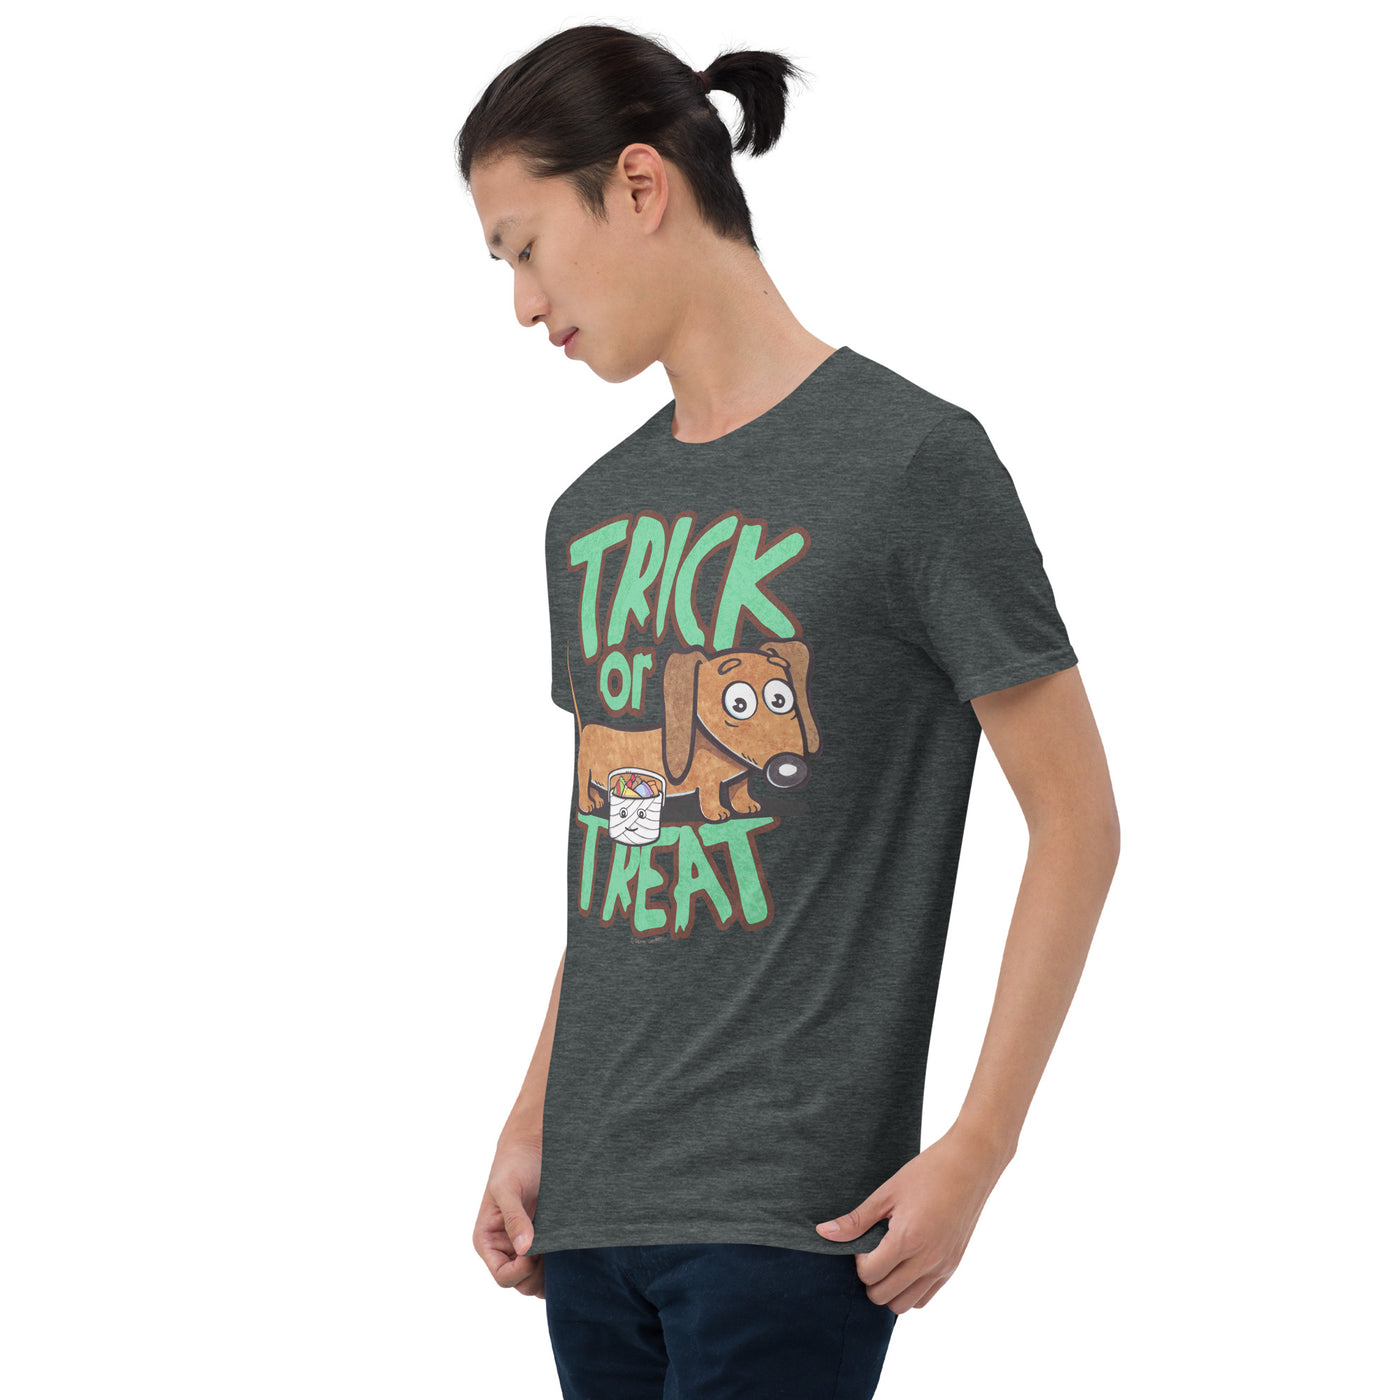 Funny Cute Doxie Dachshund Halloween Unisex T-Shirt